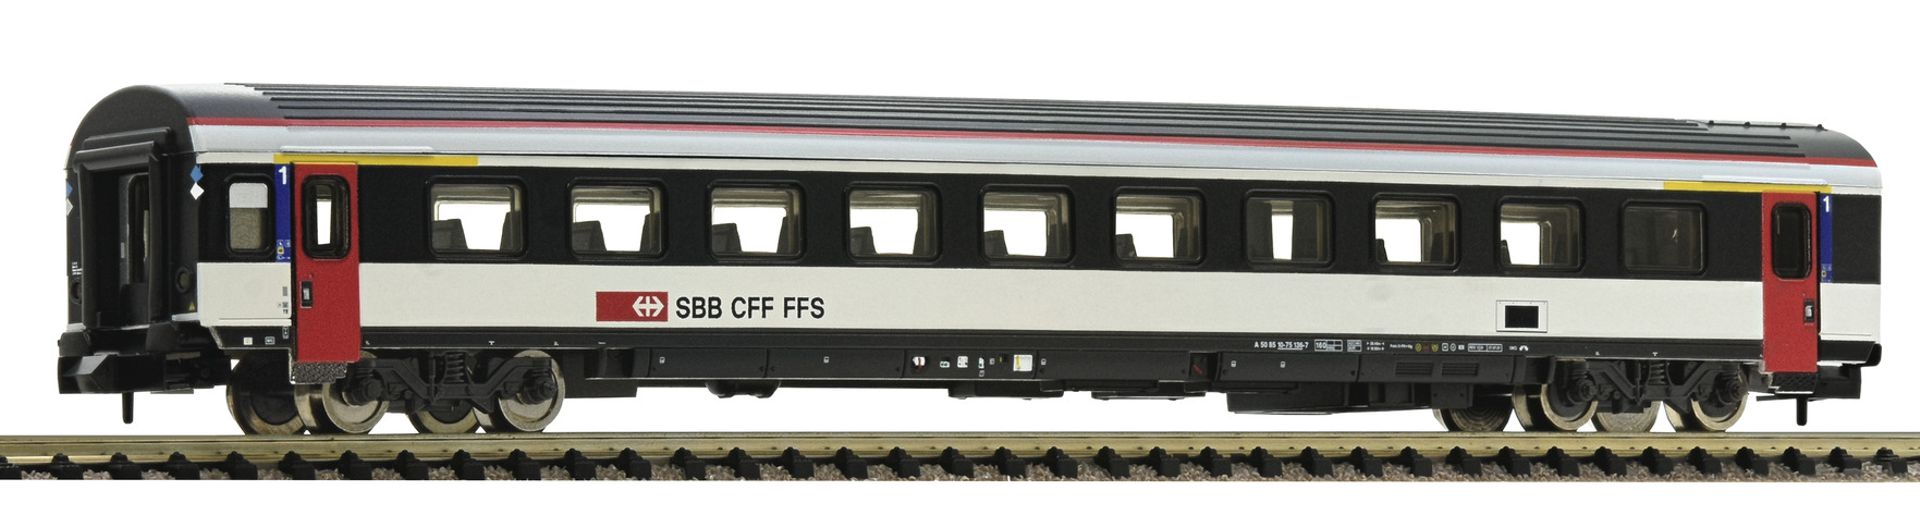 Fleischmann 6260014 - Personenwagen EW-IV, 1. Klasse, SBB, Ep.VI